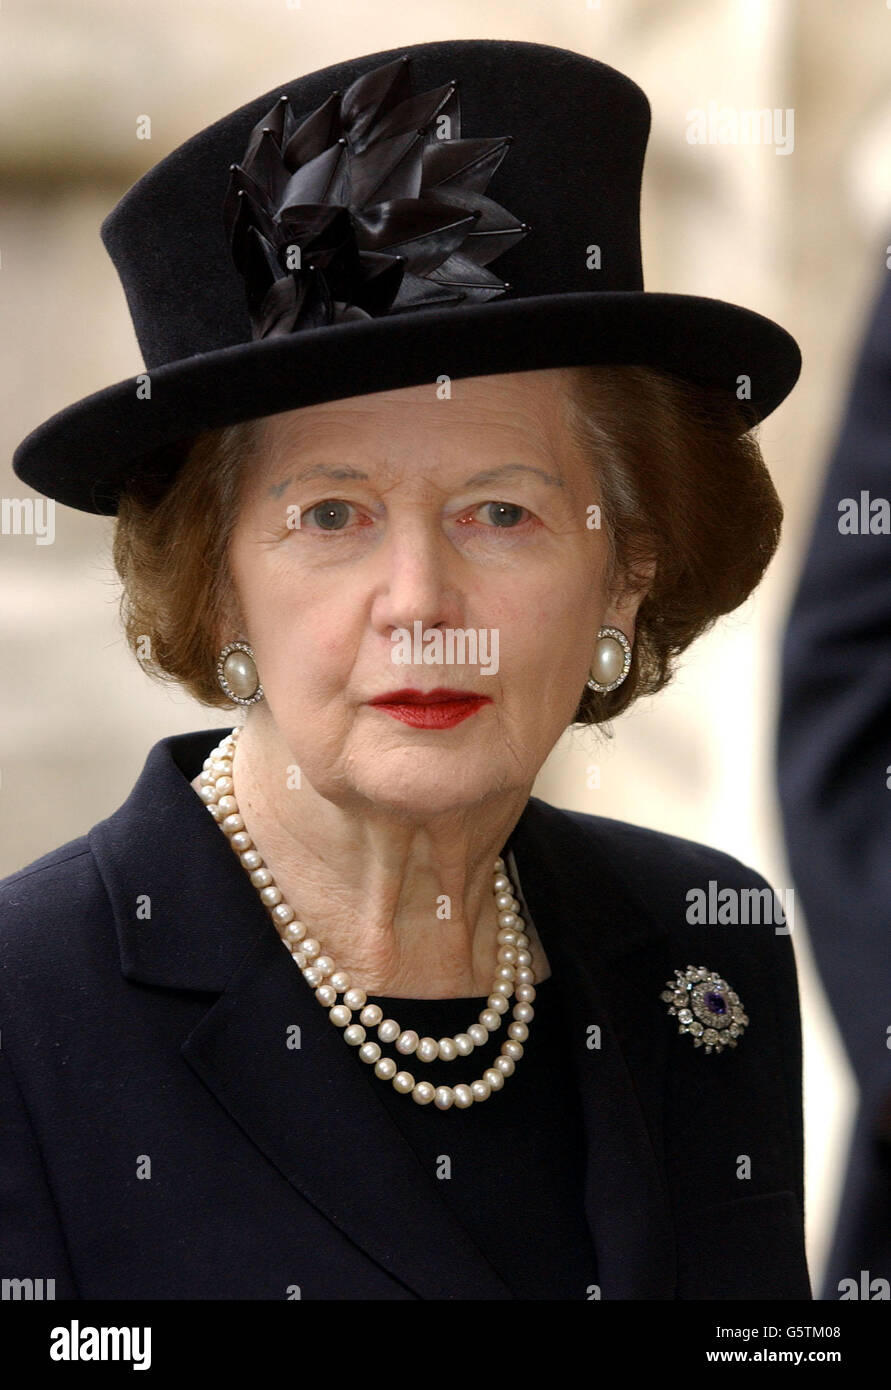 Baroness Thatcher, kommt zur Gedenkfeier von Prinzessin Margaret in Westminster Abbey, London. Prinzessin Margaret, die jüngere Schwester der britischen Königin Elisabeth II., starb am 9. Februar im Alter von 71 Jahren. Stockfoto